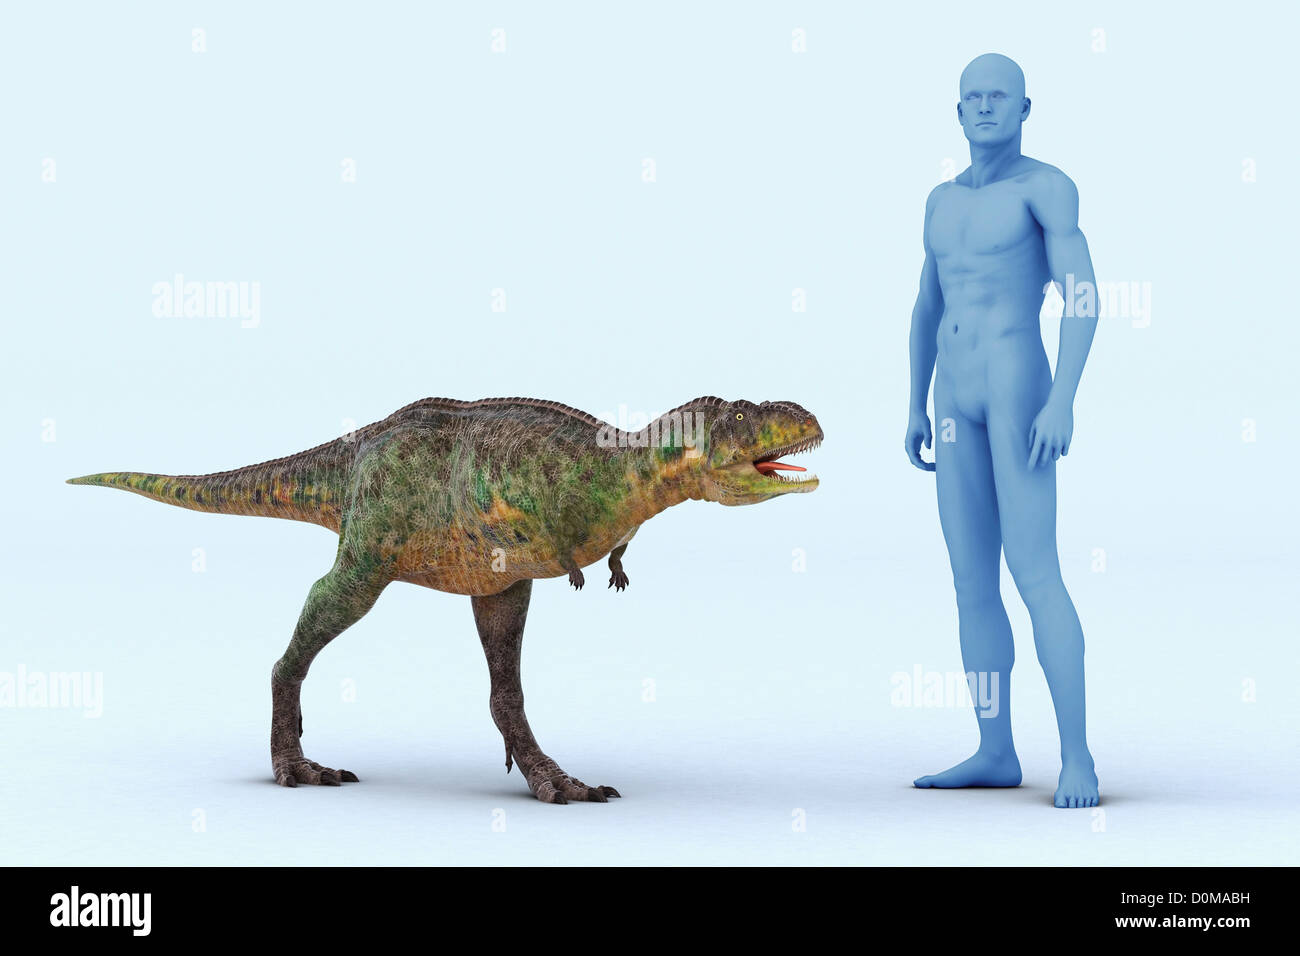 Modell eines Aucasaurus Dinosauriers zeigt die Größe im Vergleich zu einem Menschen. Stockfoto